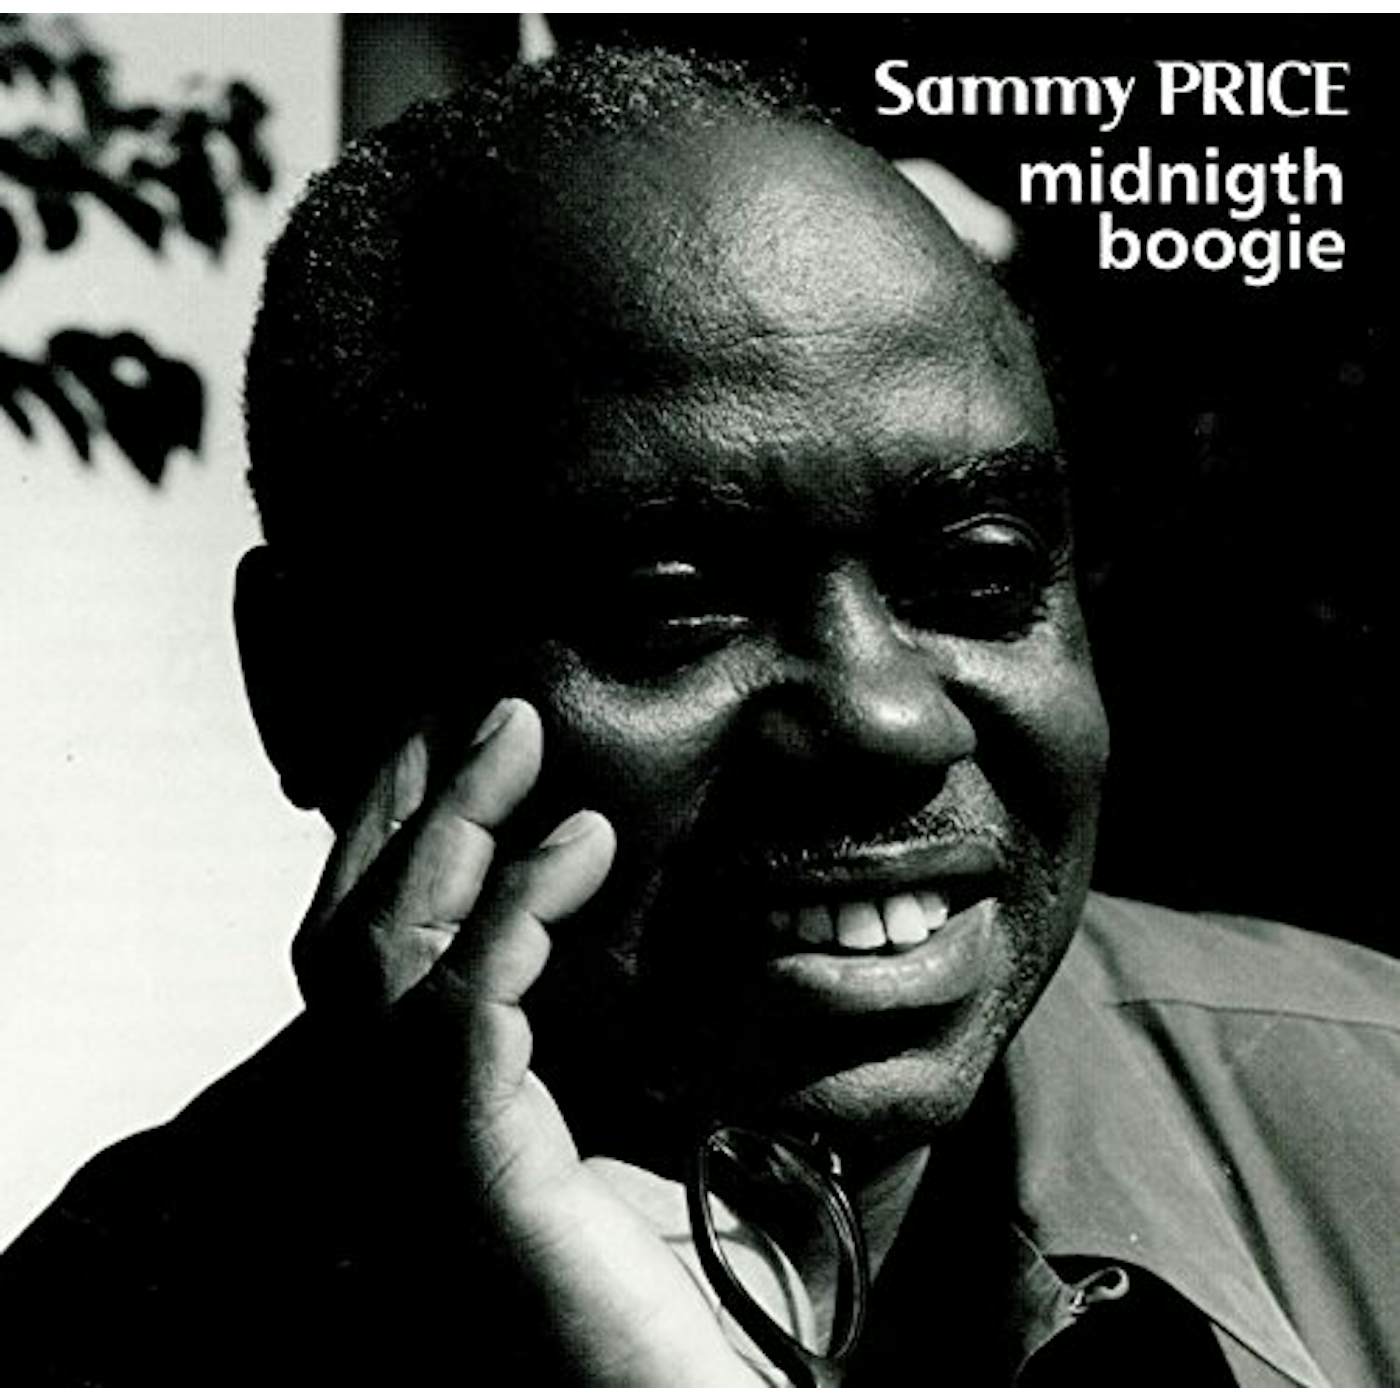 Sammy Price MIGNIGHT BOOGIE CD